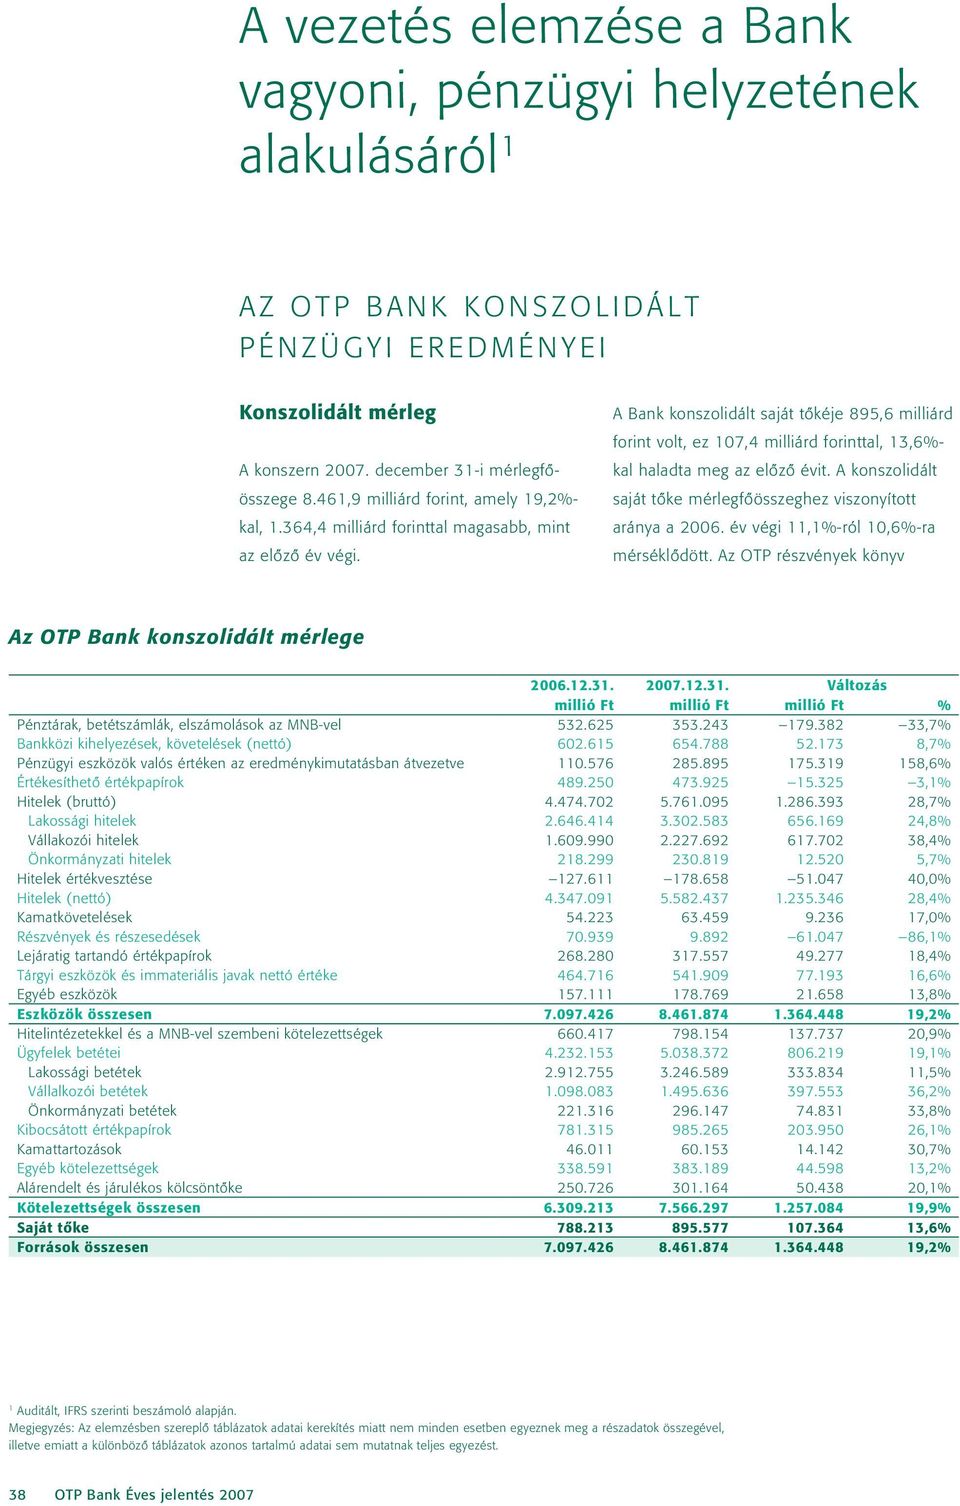 A Bank konszolidált saját tôkéje 895,6 milliárd forint volt, ez 107,4 milliárd forinttal, 13,6%- kal haladta meg az elôzô évit. A konszolidált saját tôke mérlegfôösszeghez viszonyított aránya a 2006.